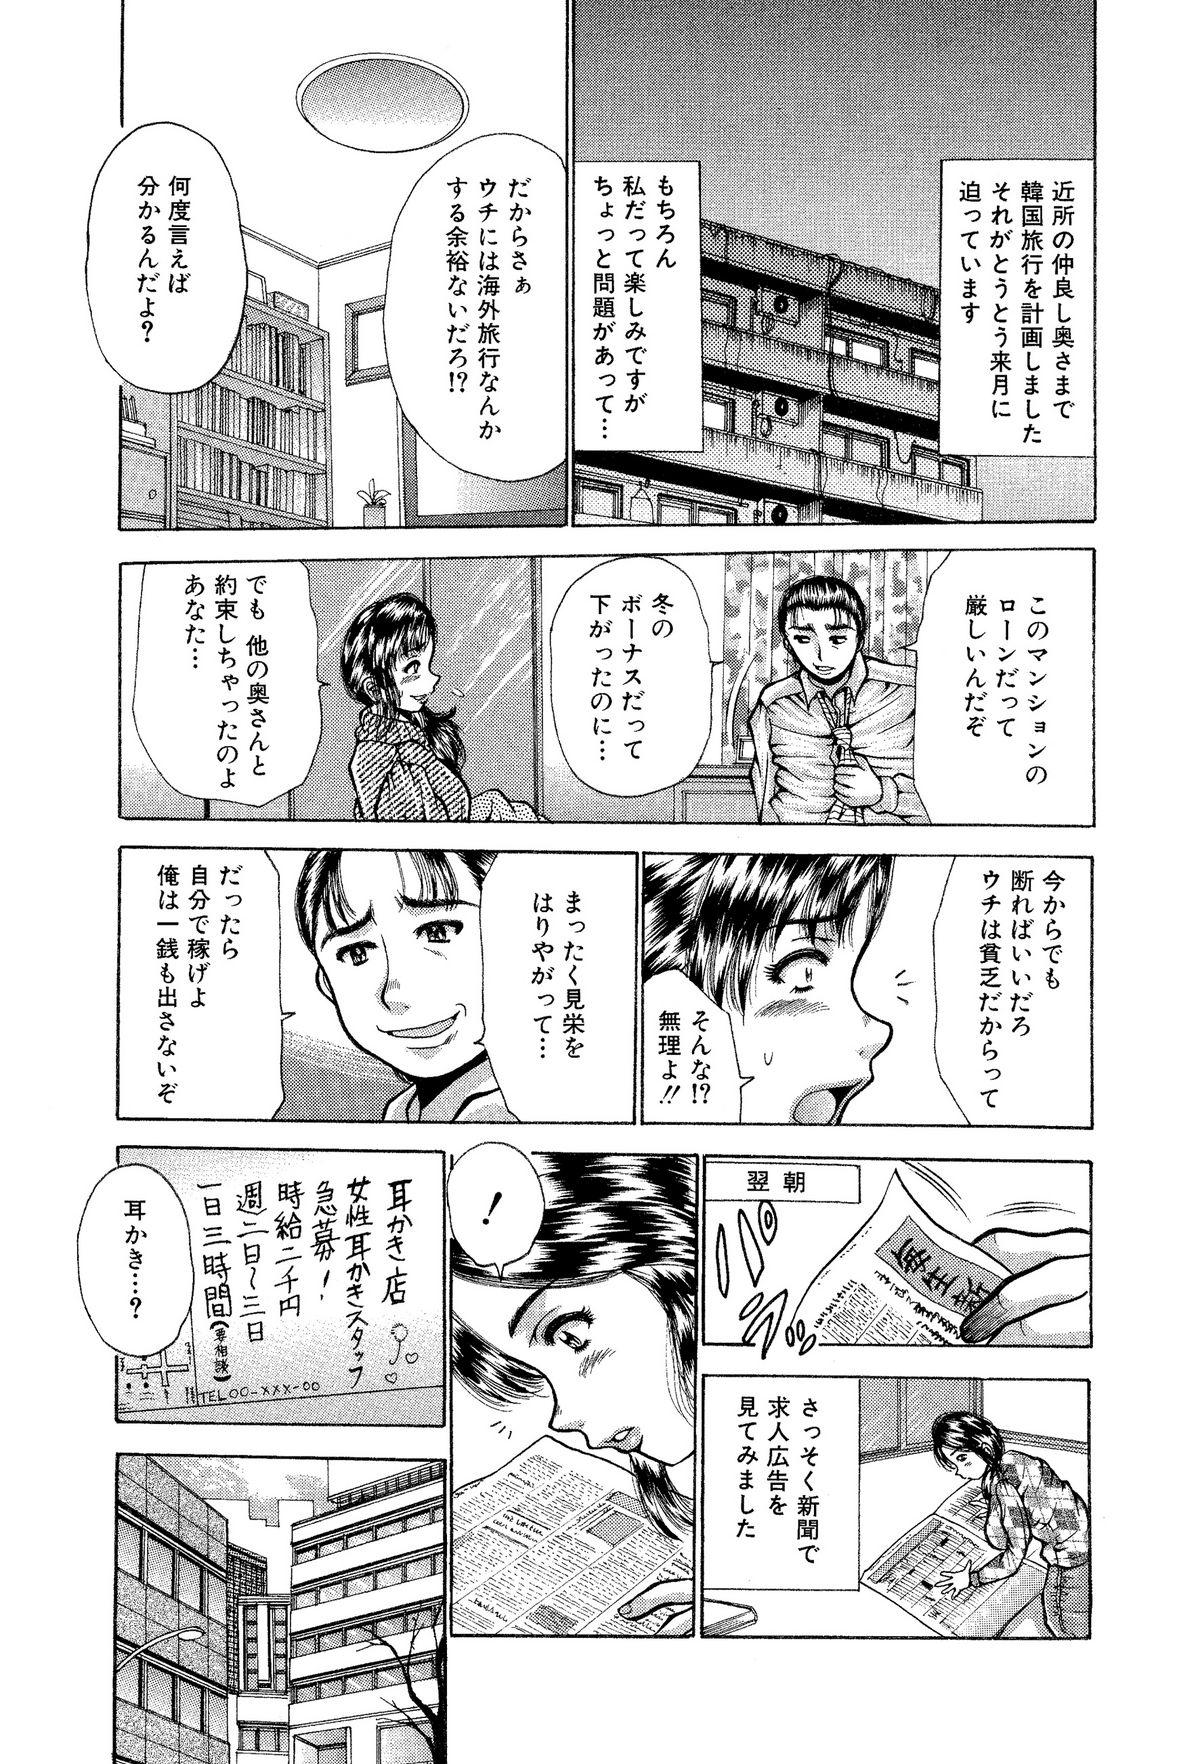 Penetration Itai Oku-san Manga o Atsumetemita Voyeur - Page 4